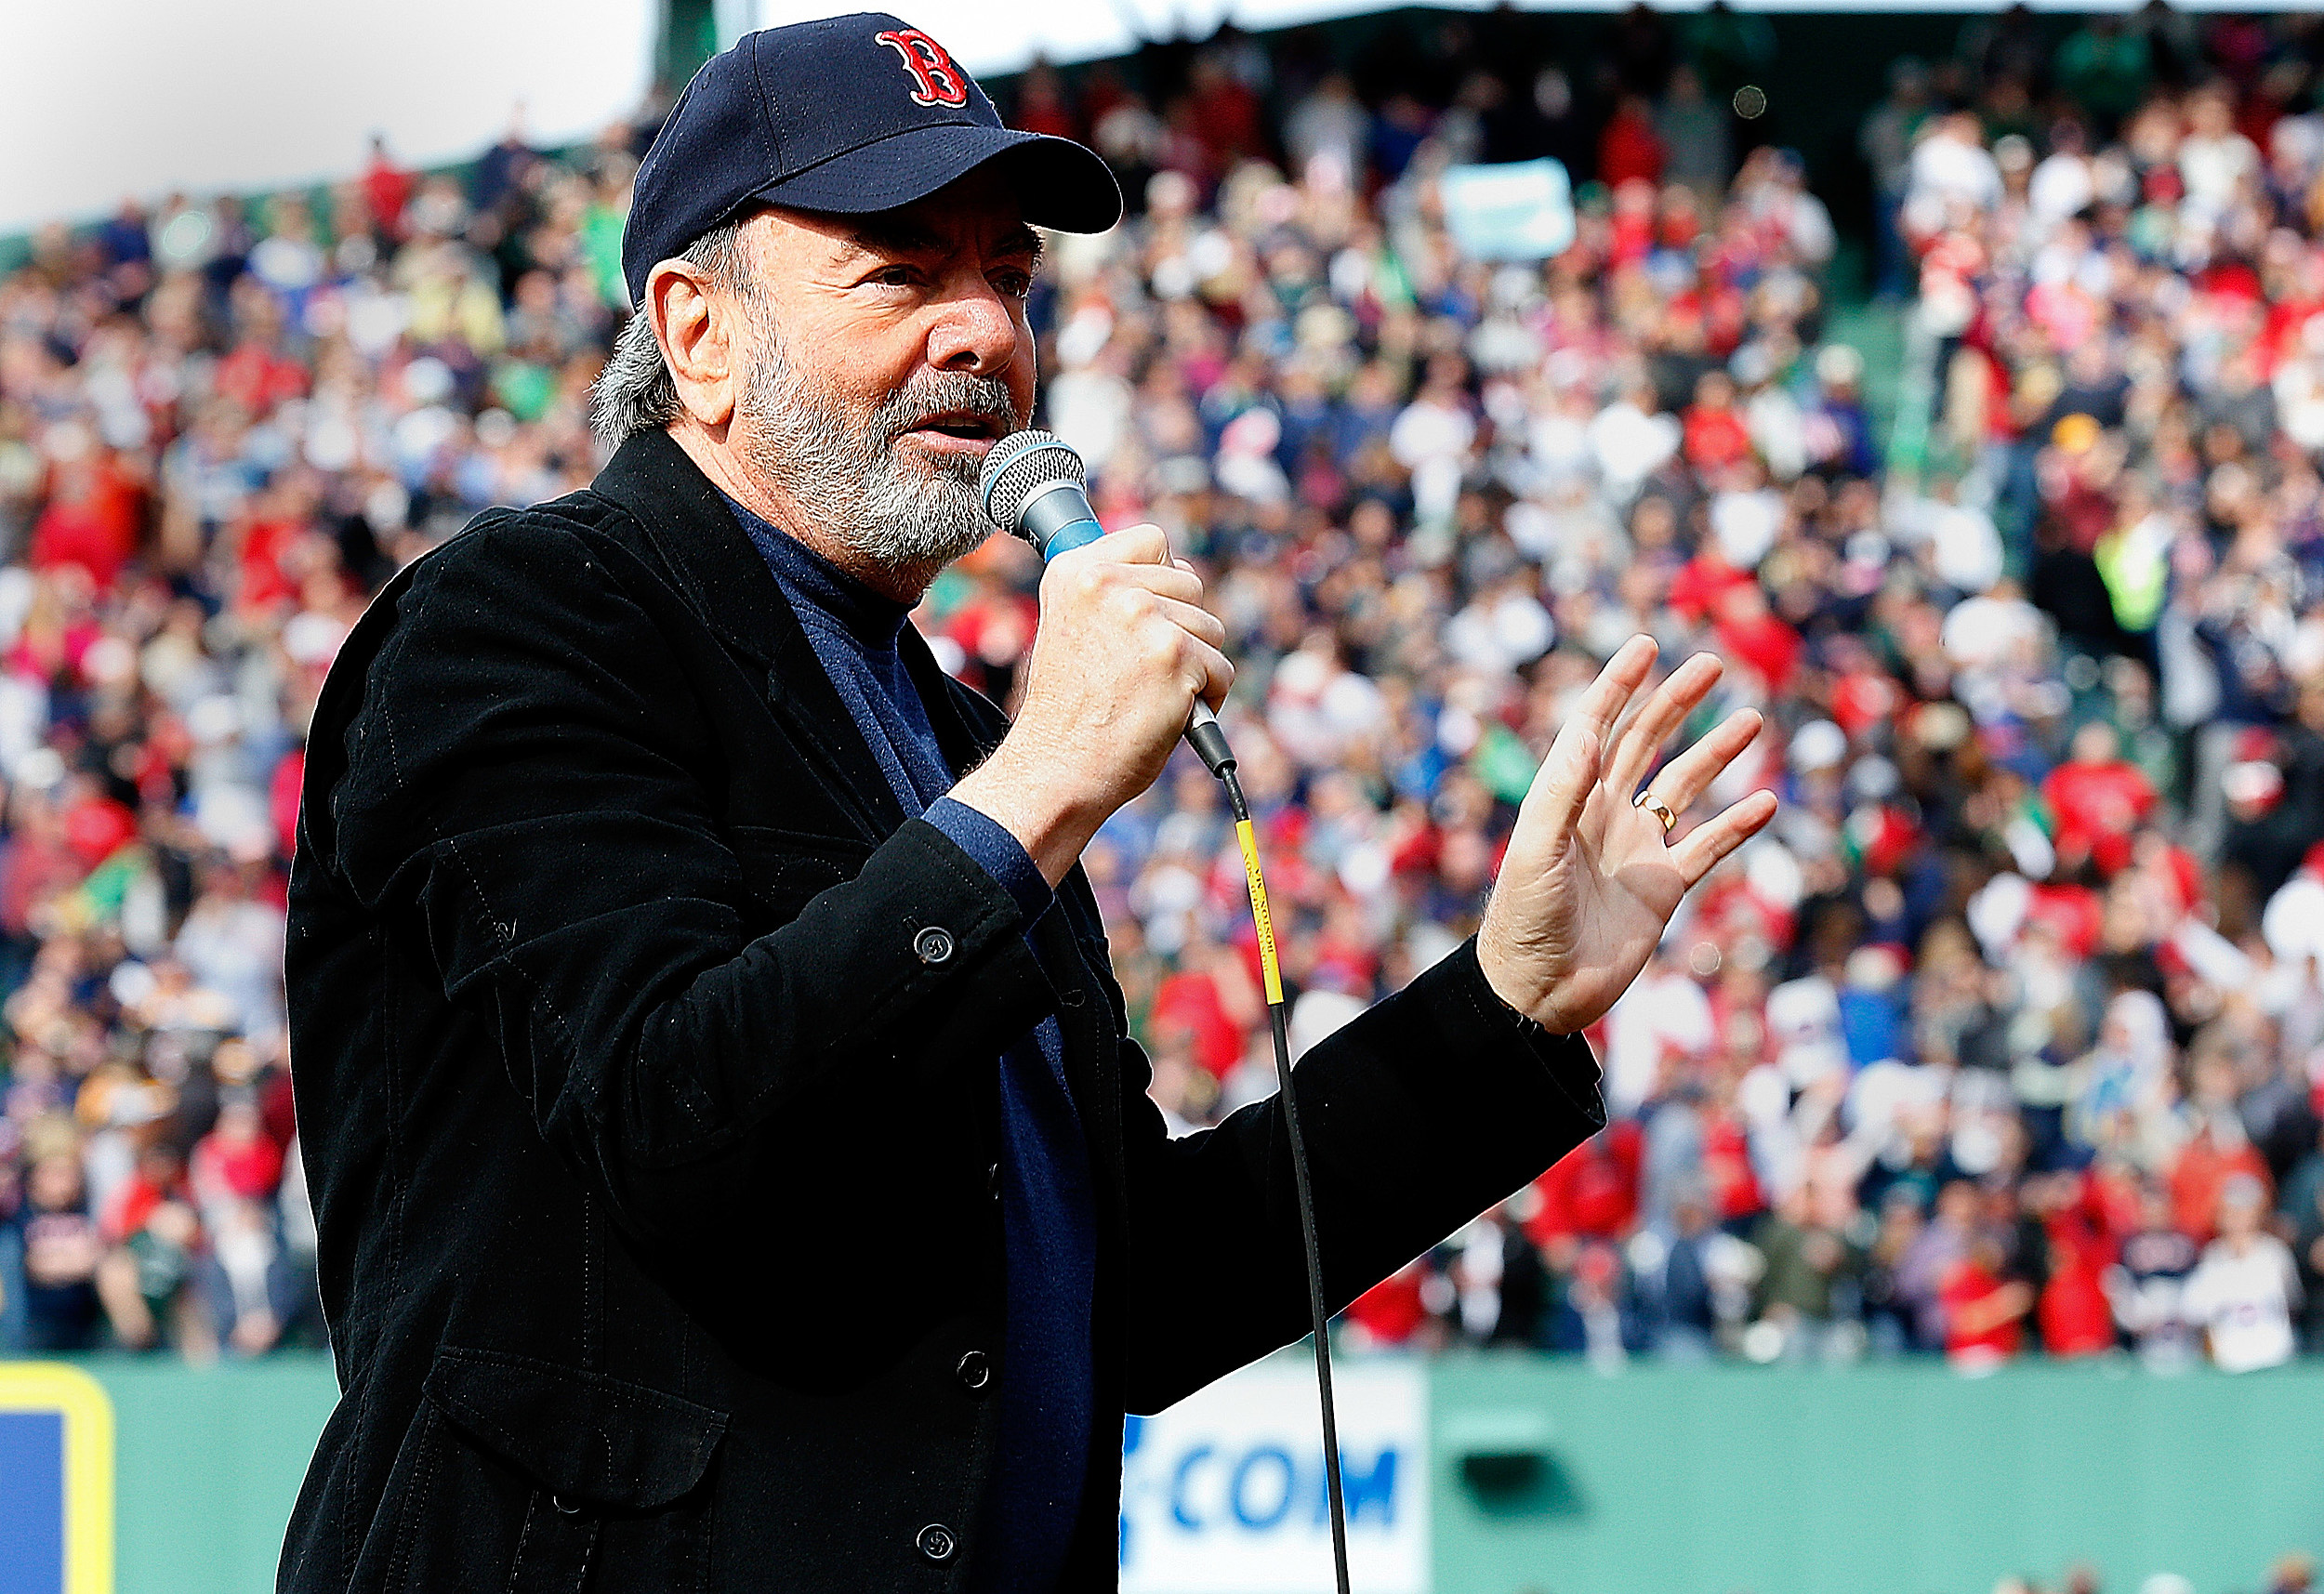 Singing Sweet Caroline at Boston Red Sox baseball game 